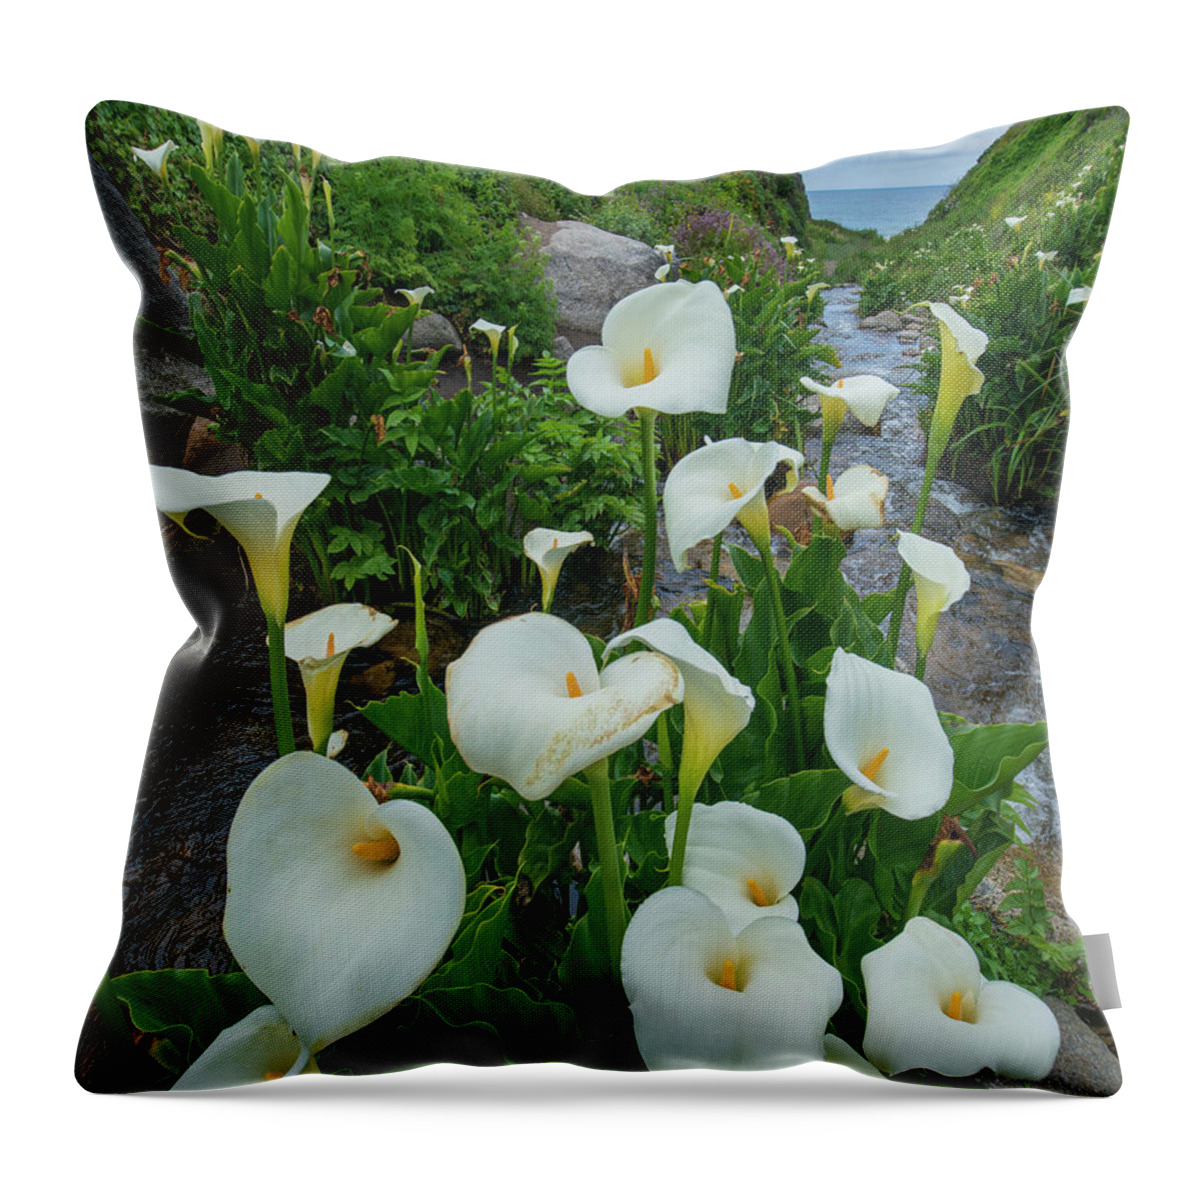 00571595 Throw Pillow featuring the photograph Calla Lilies, Garrapata State Beach, Big Sur, California by Tim Fitzharris